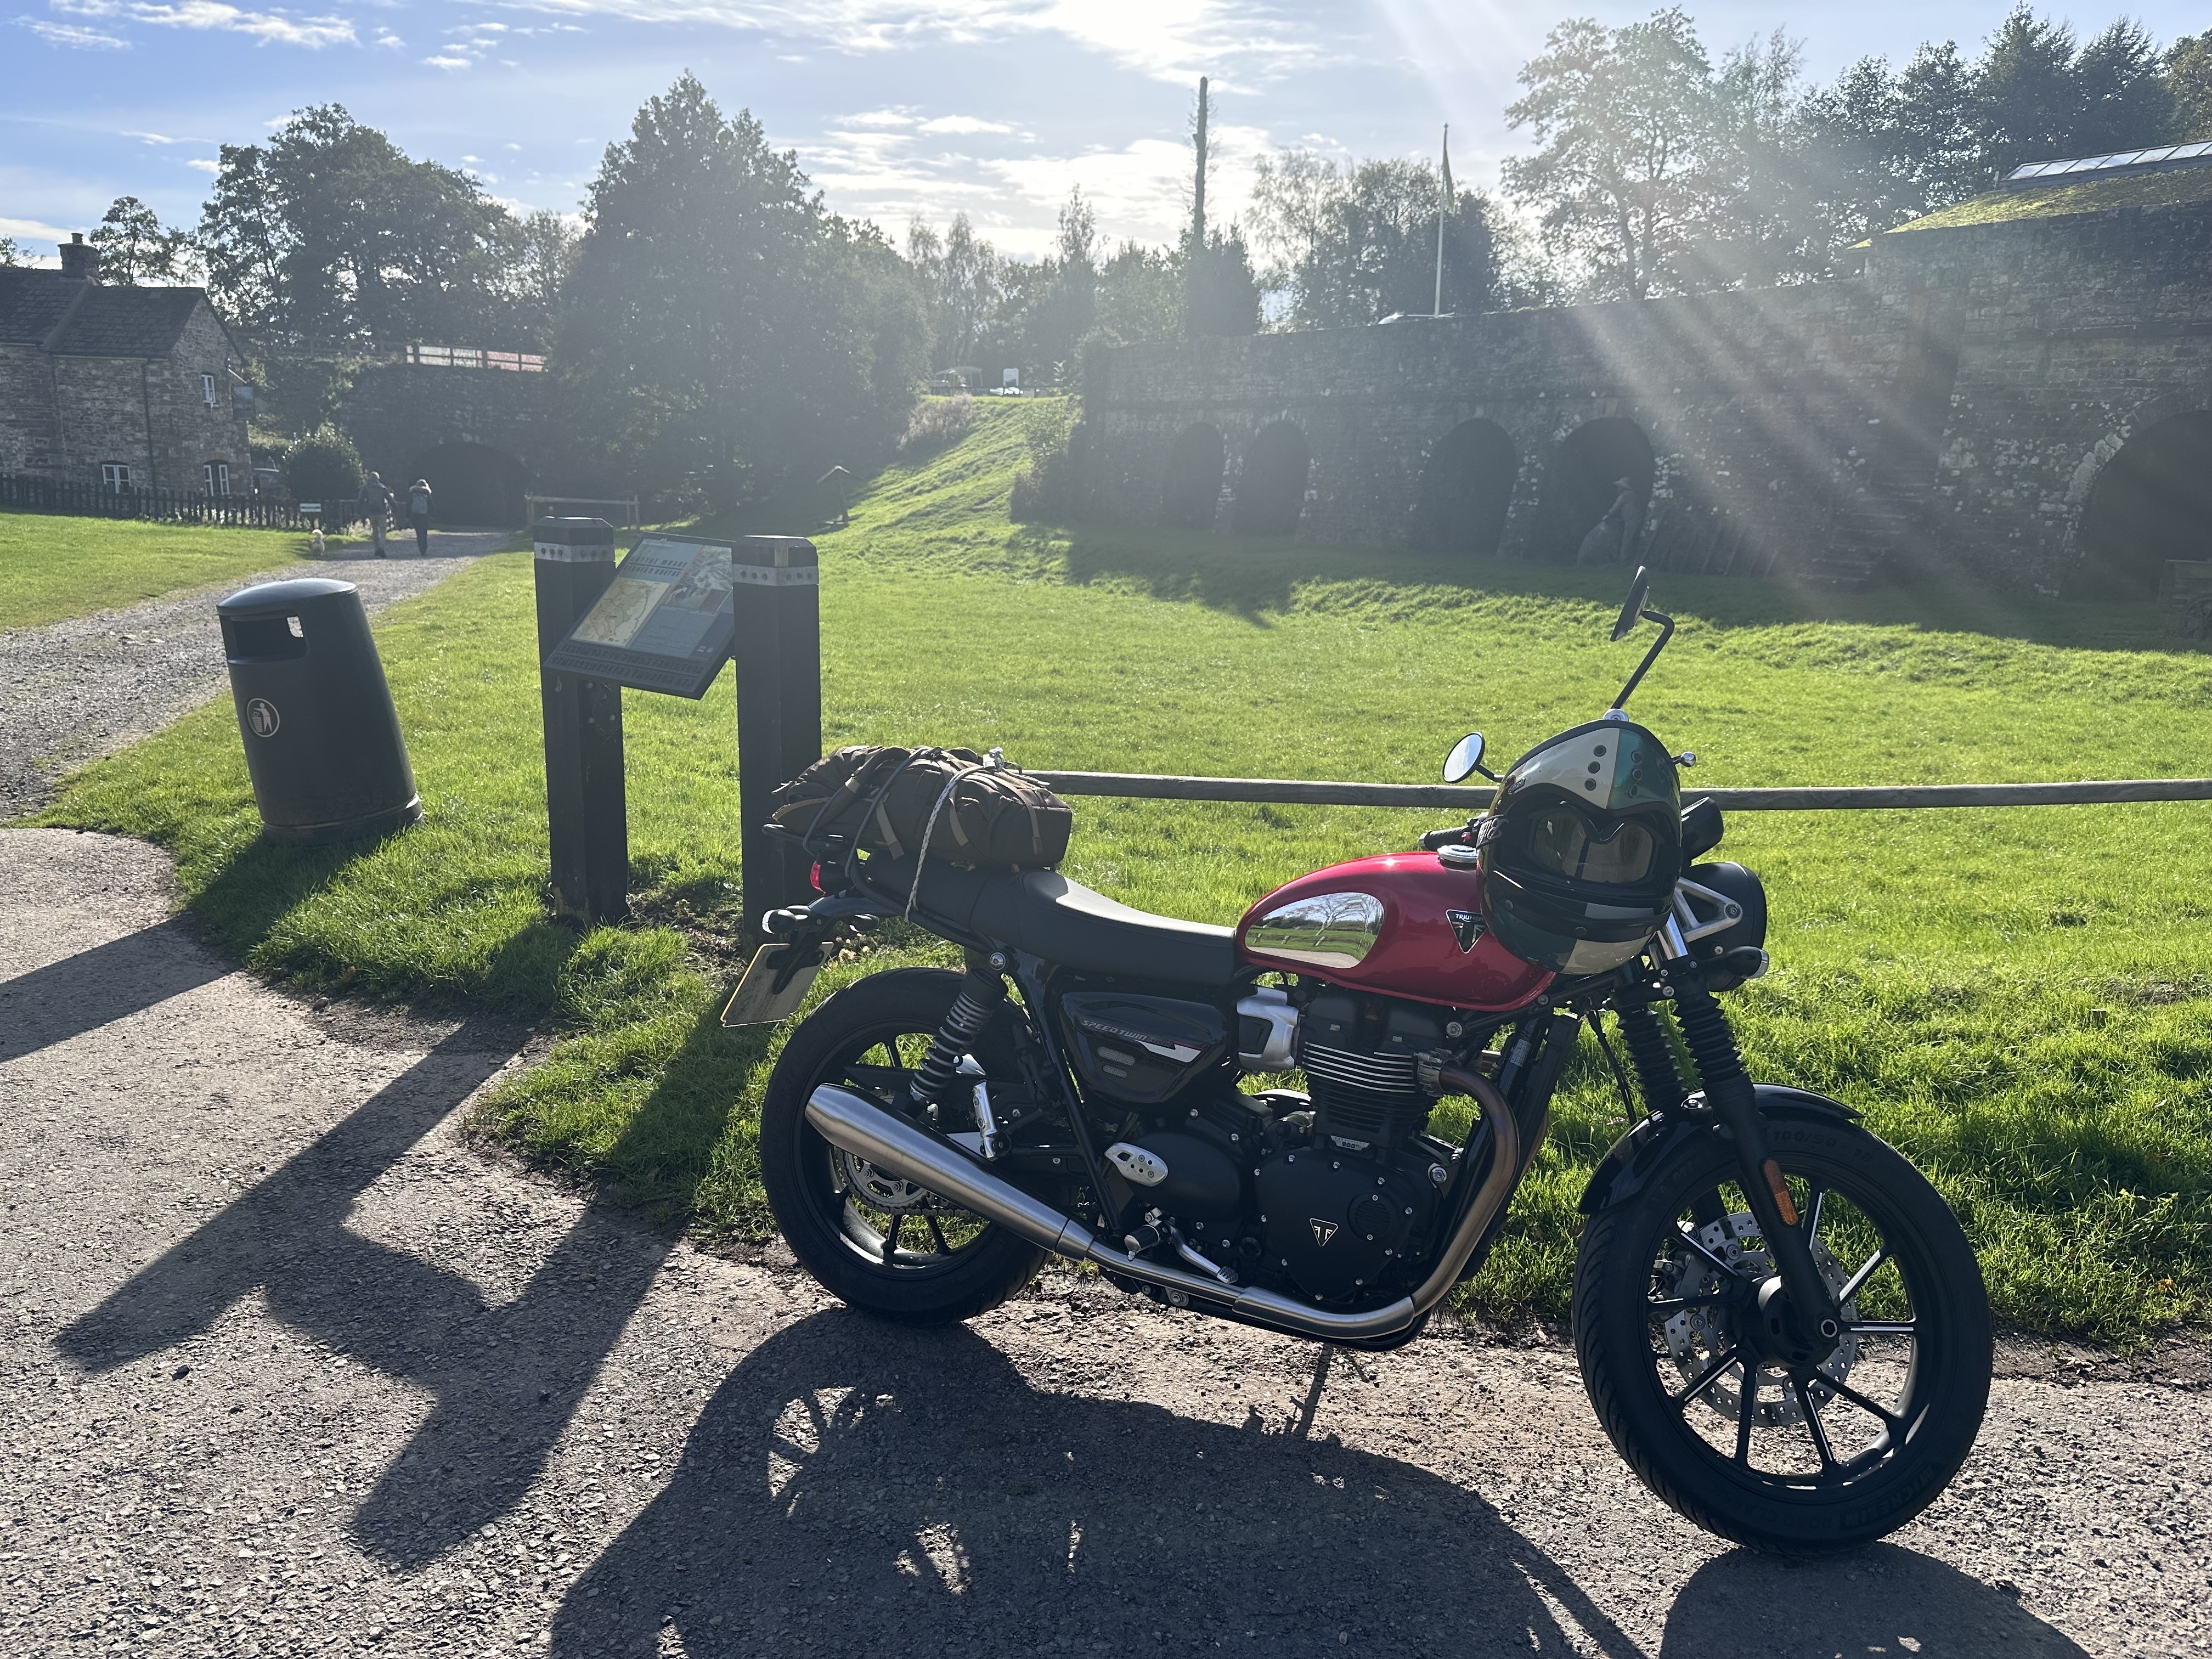 Una fotografía de una motocicleta sobre un fondo soleado y escénico